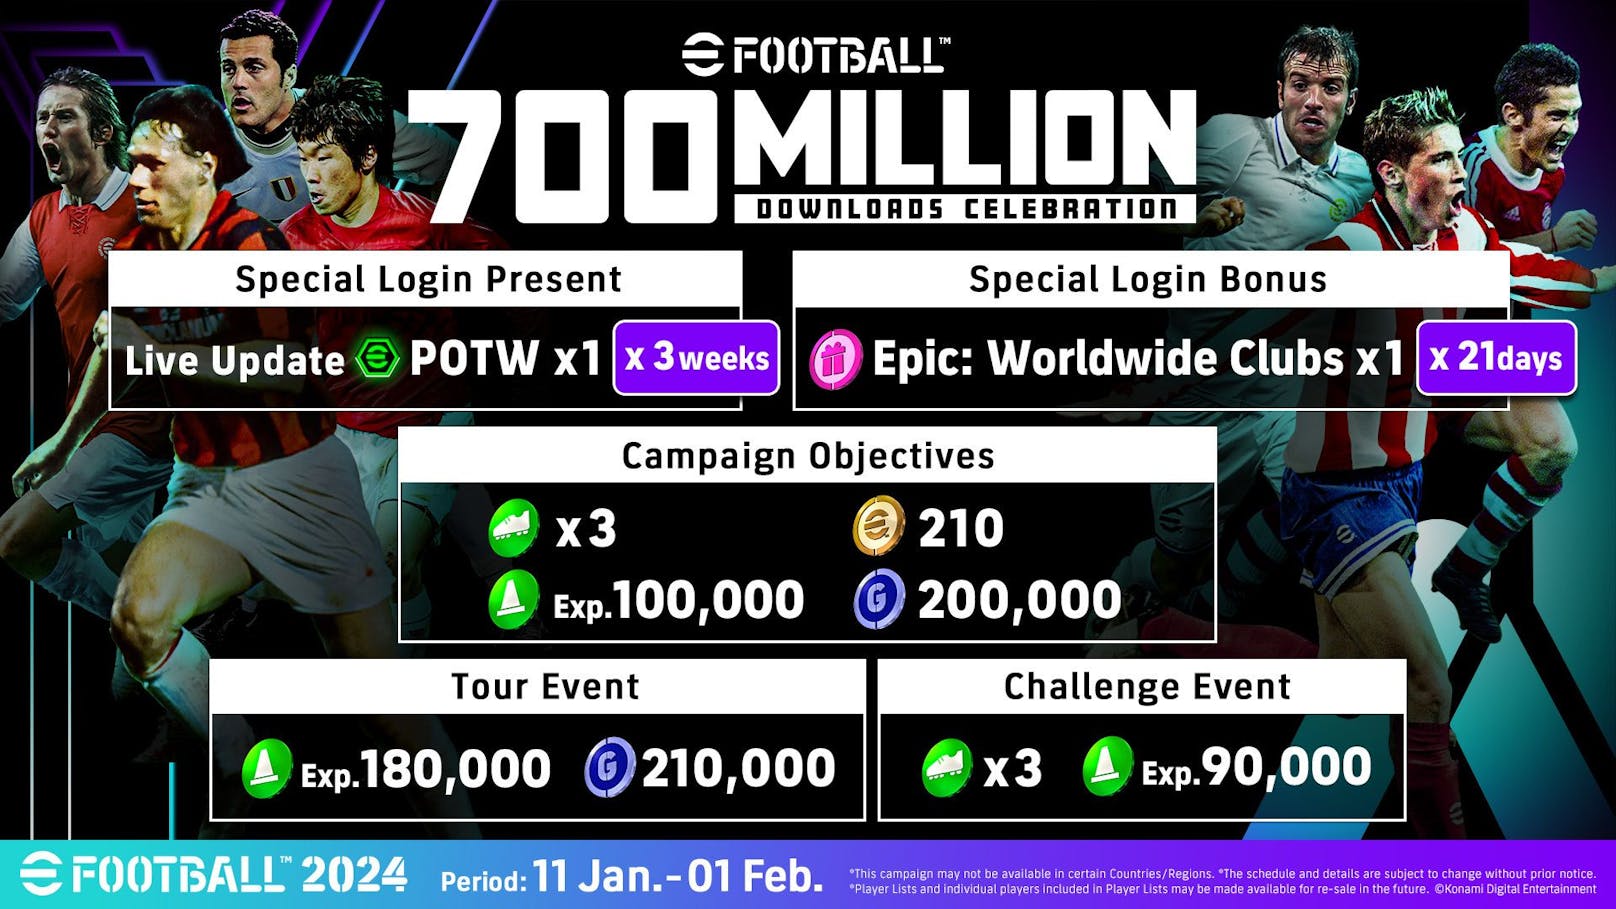 "eFootball" erreicht Meilenstein von 700 Millionen Downloads.